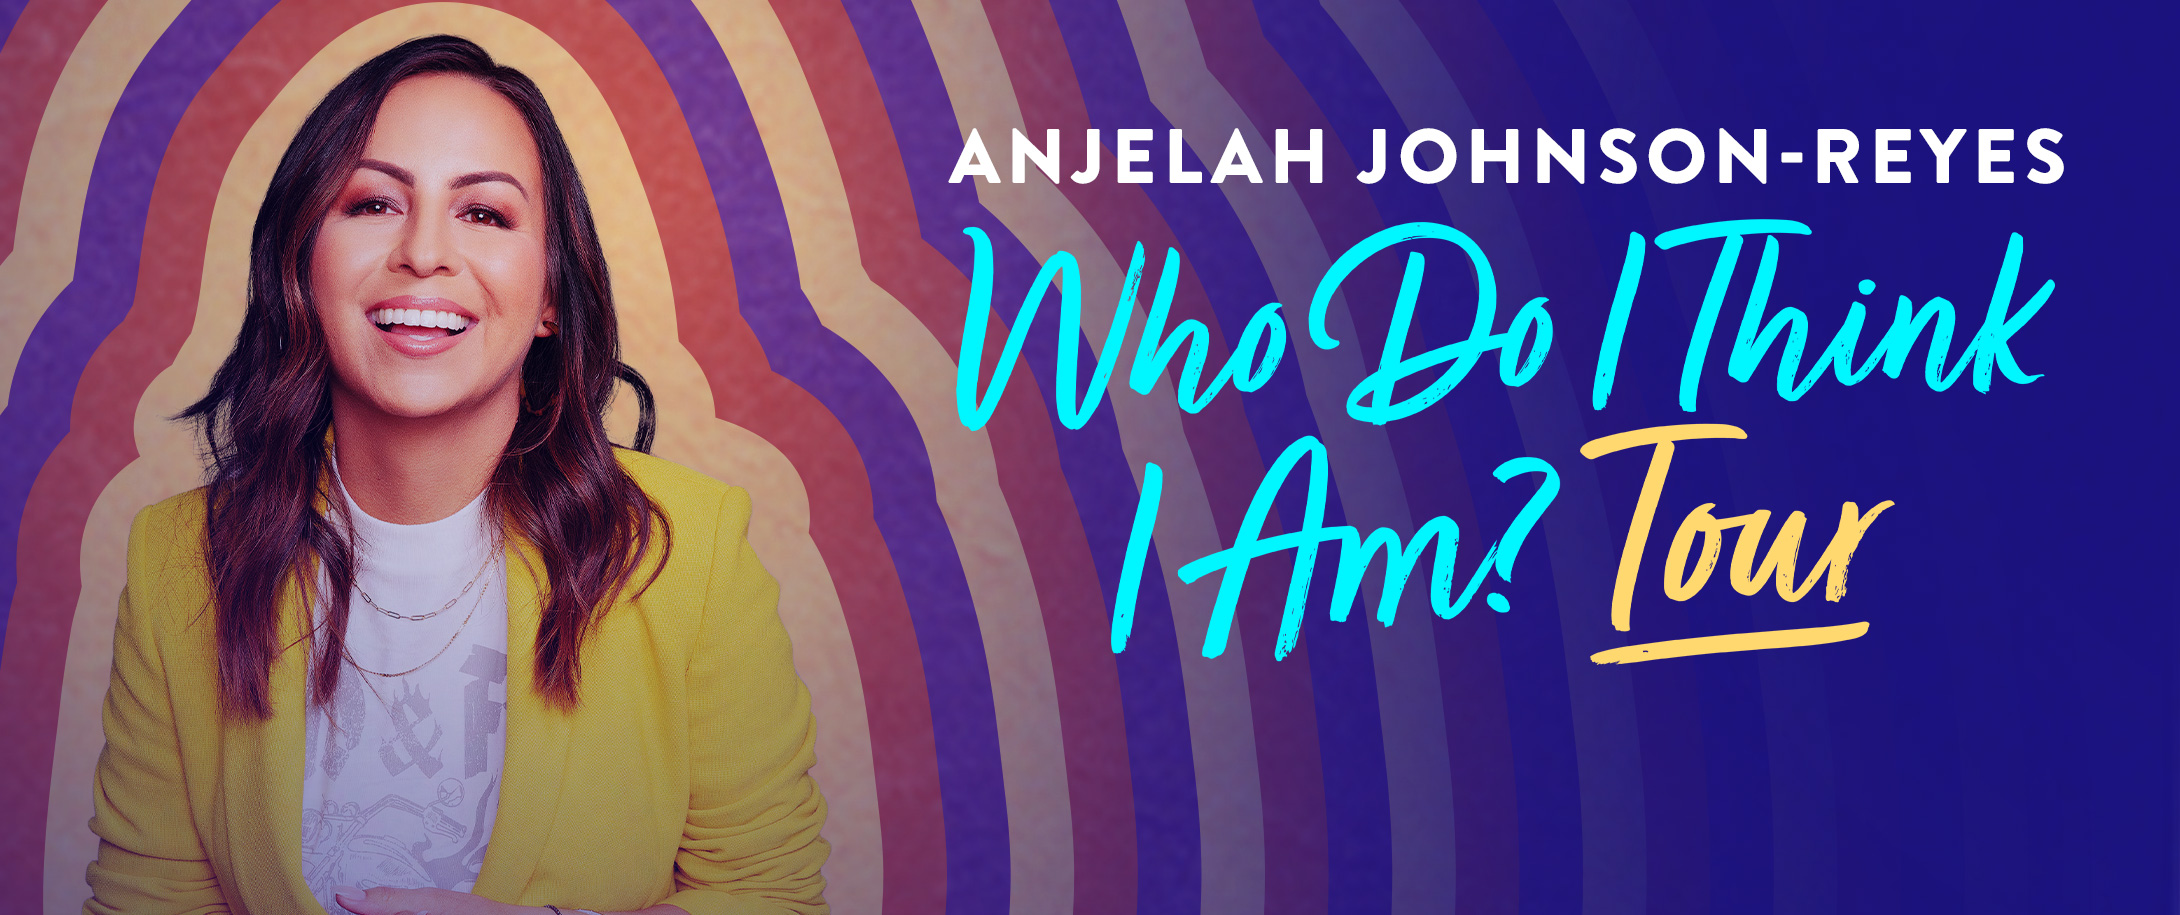 Anjelah Johnson-Reyes “Who Do I Think I Am?” Tour